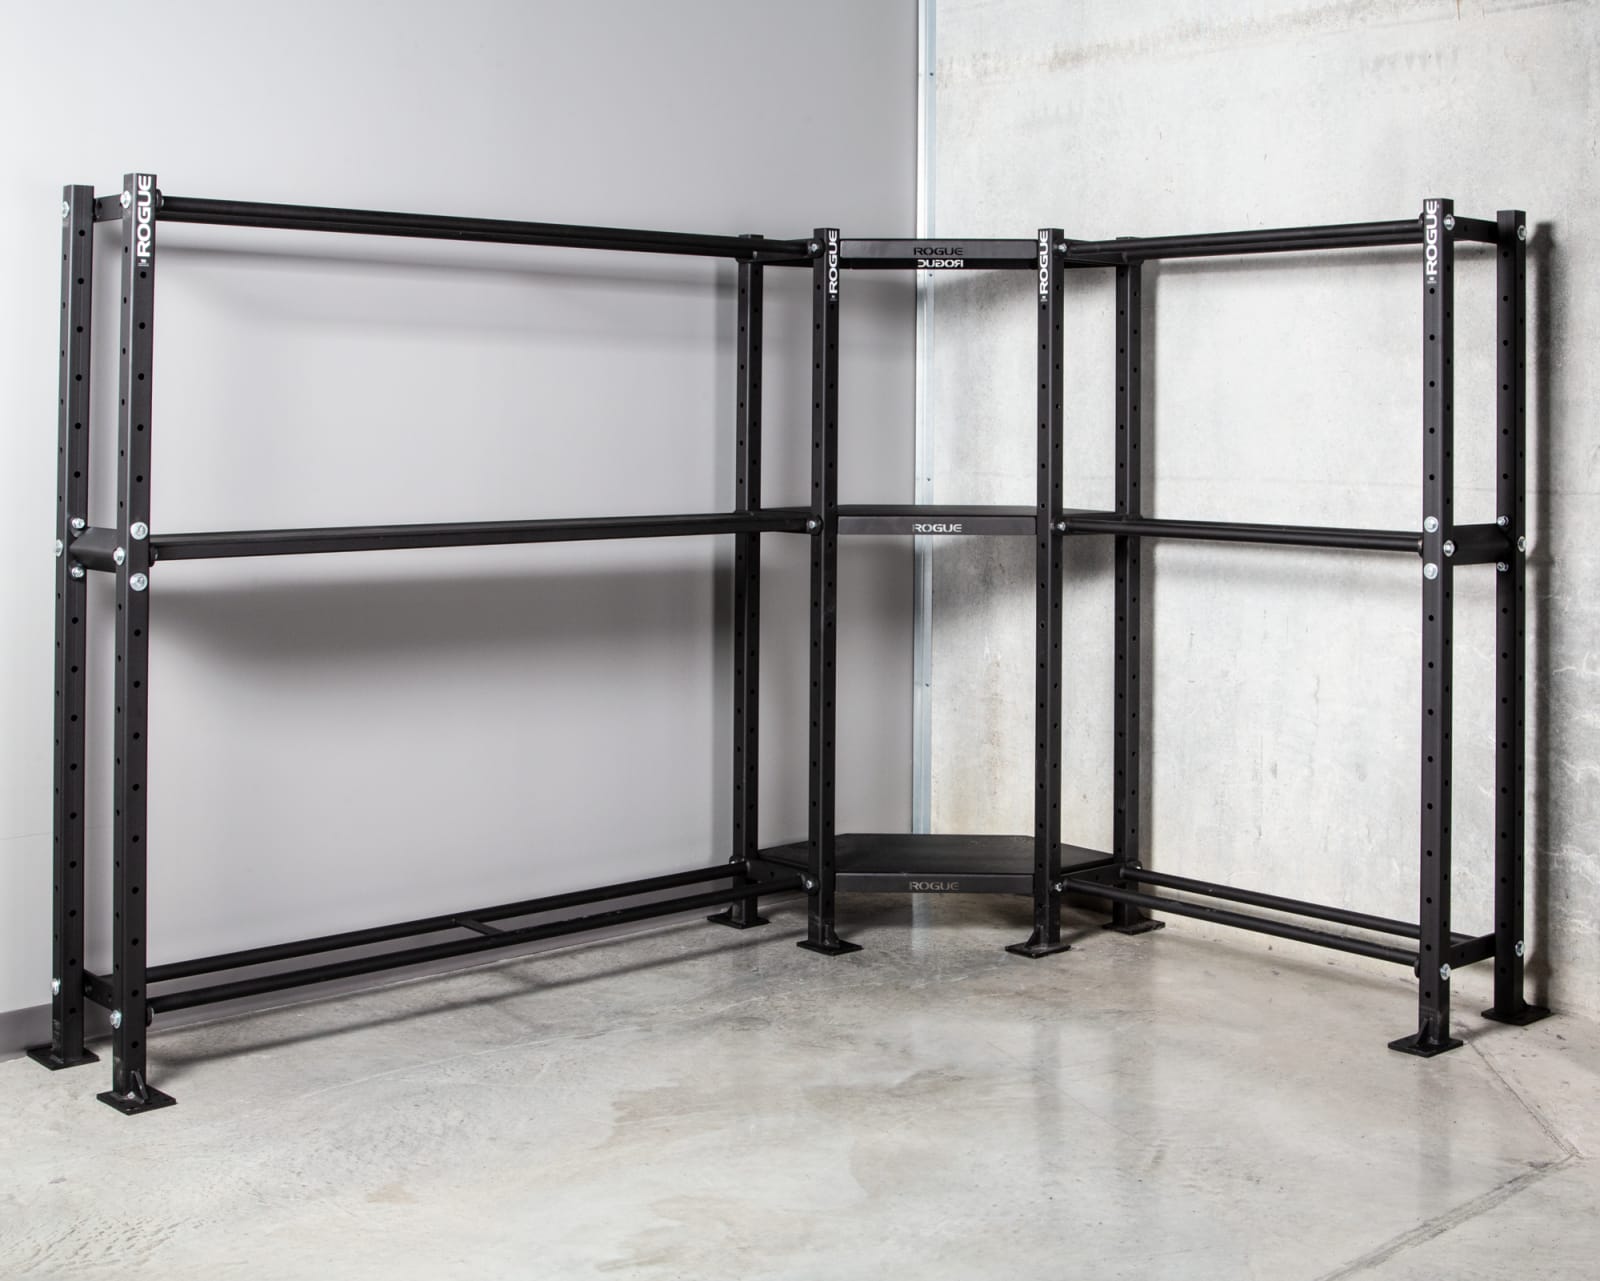 Mass Storage Corner Shelf - Black